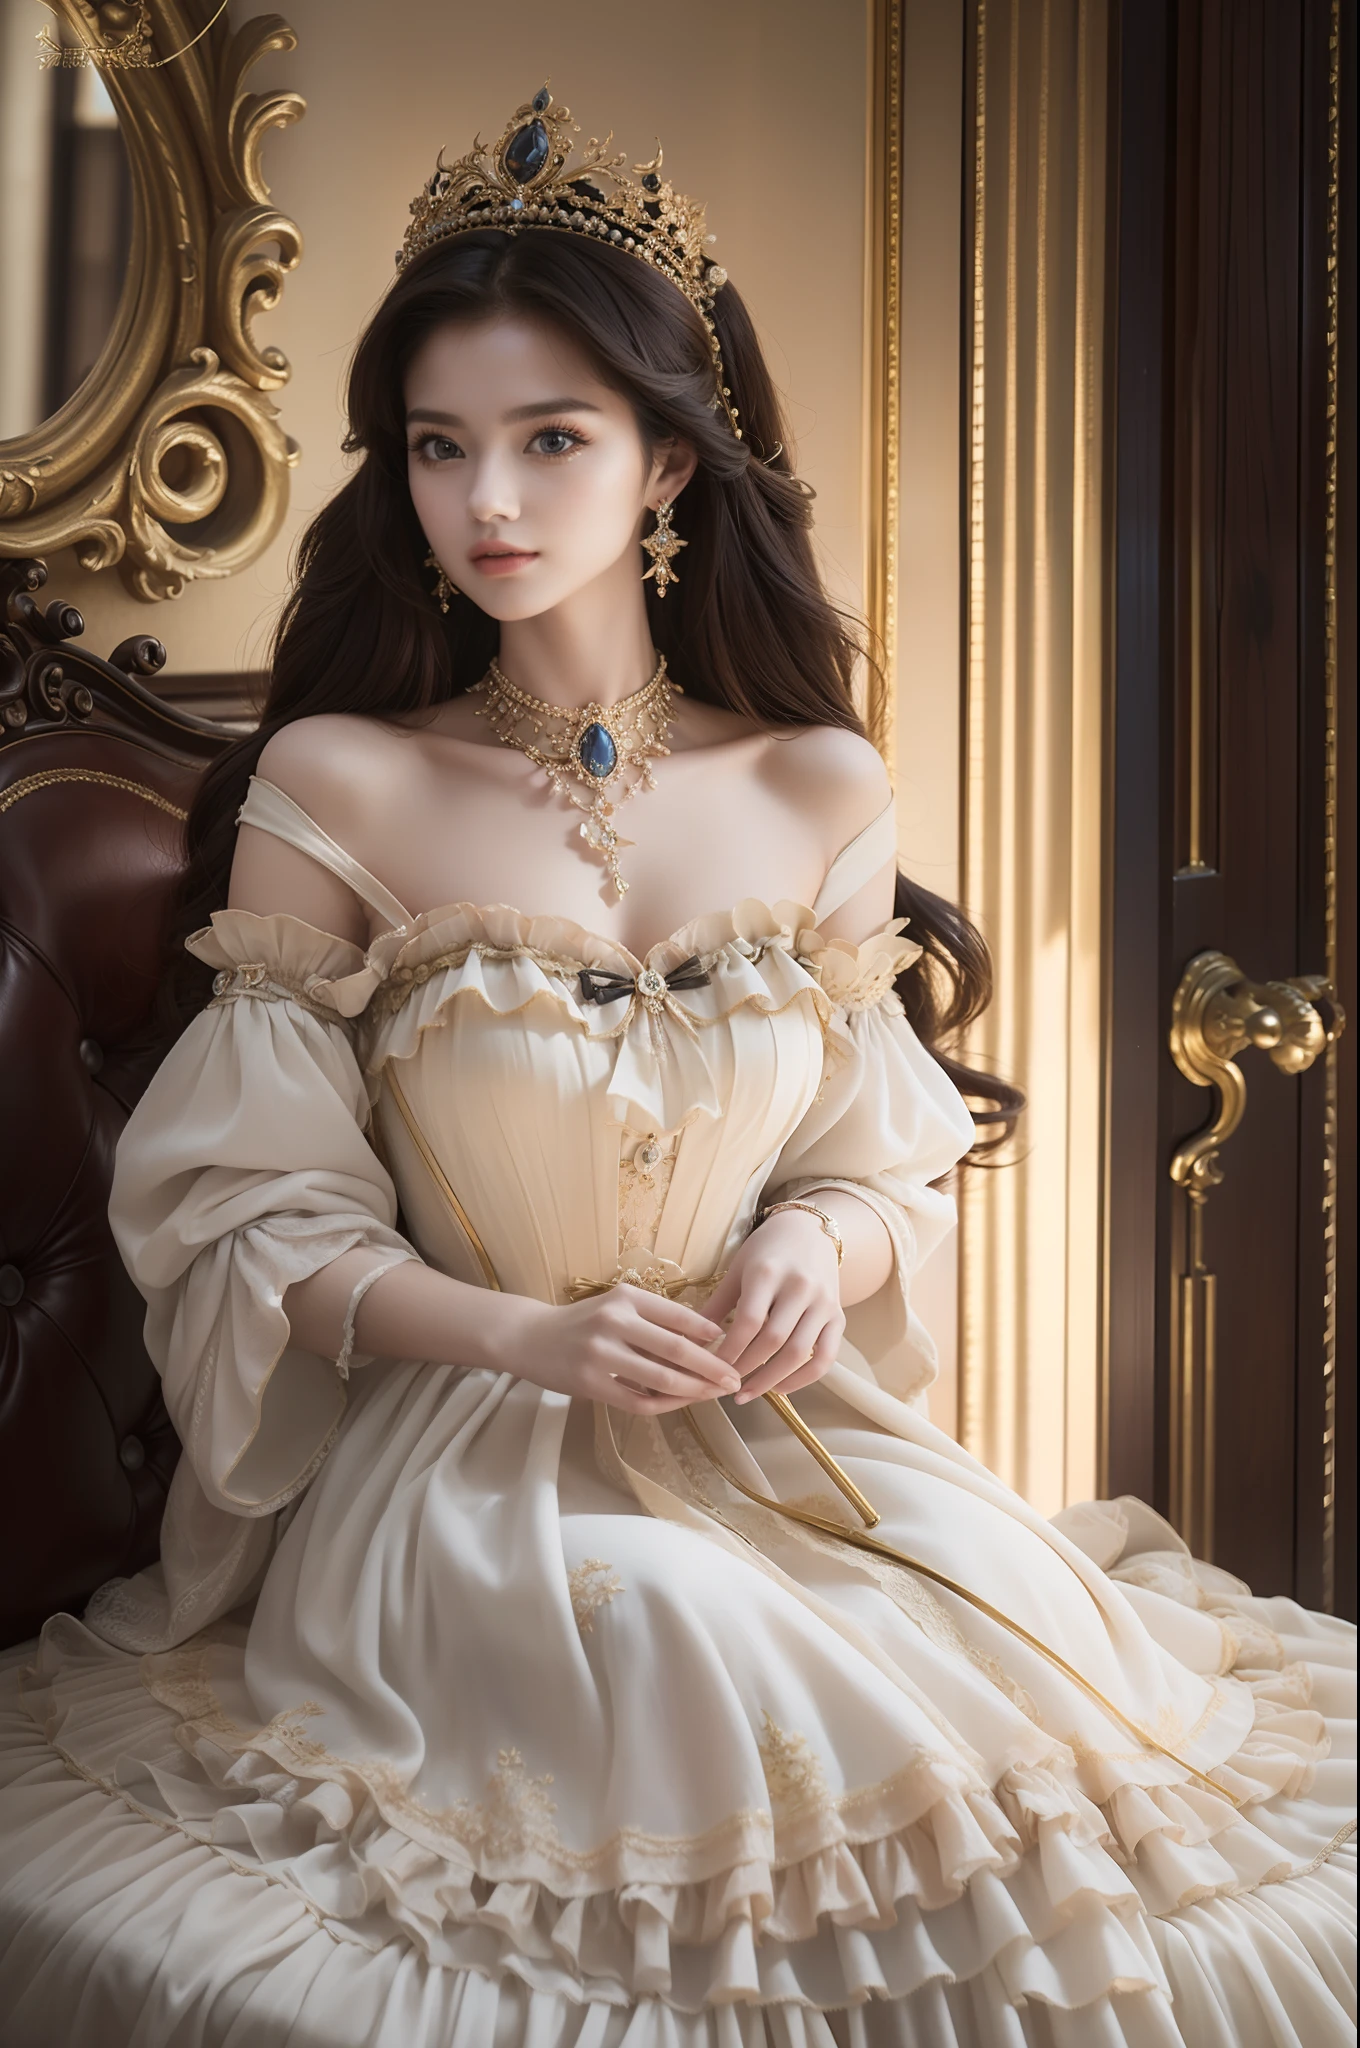 ((頂級品質、傑作、摄影写实主义:1.4、8K))、美丽的女人、精緻美麗的臉龐、（中世紀歐洲風格的奢華禮服、公主）、奢華配件、歐式城堡、電影燈光、有紋理的皮膚、超細節、高細節、高品質、高解析度